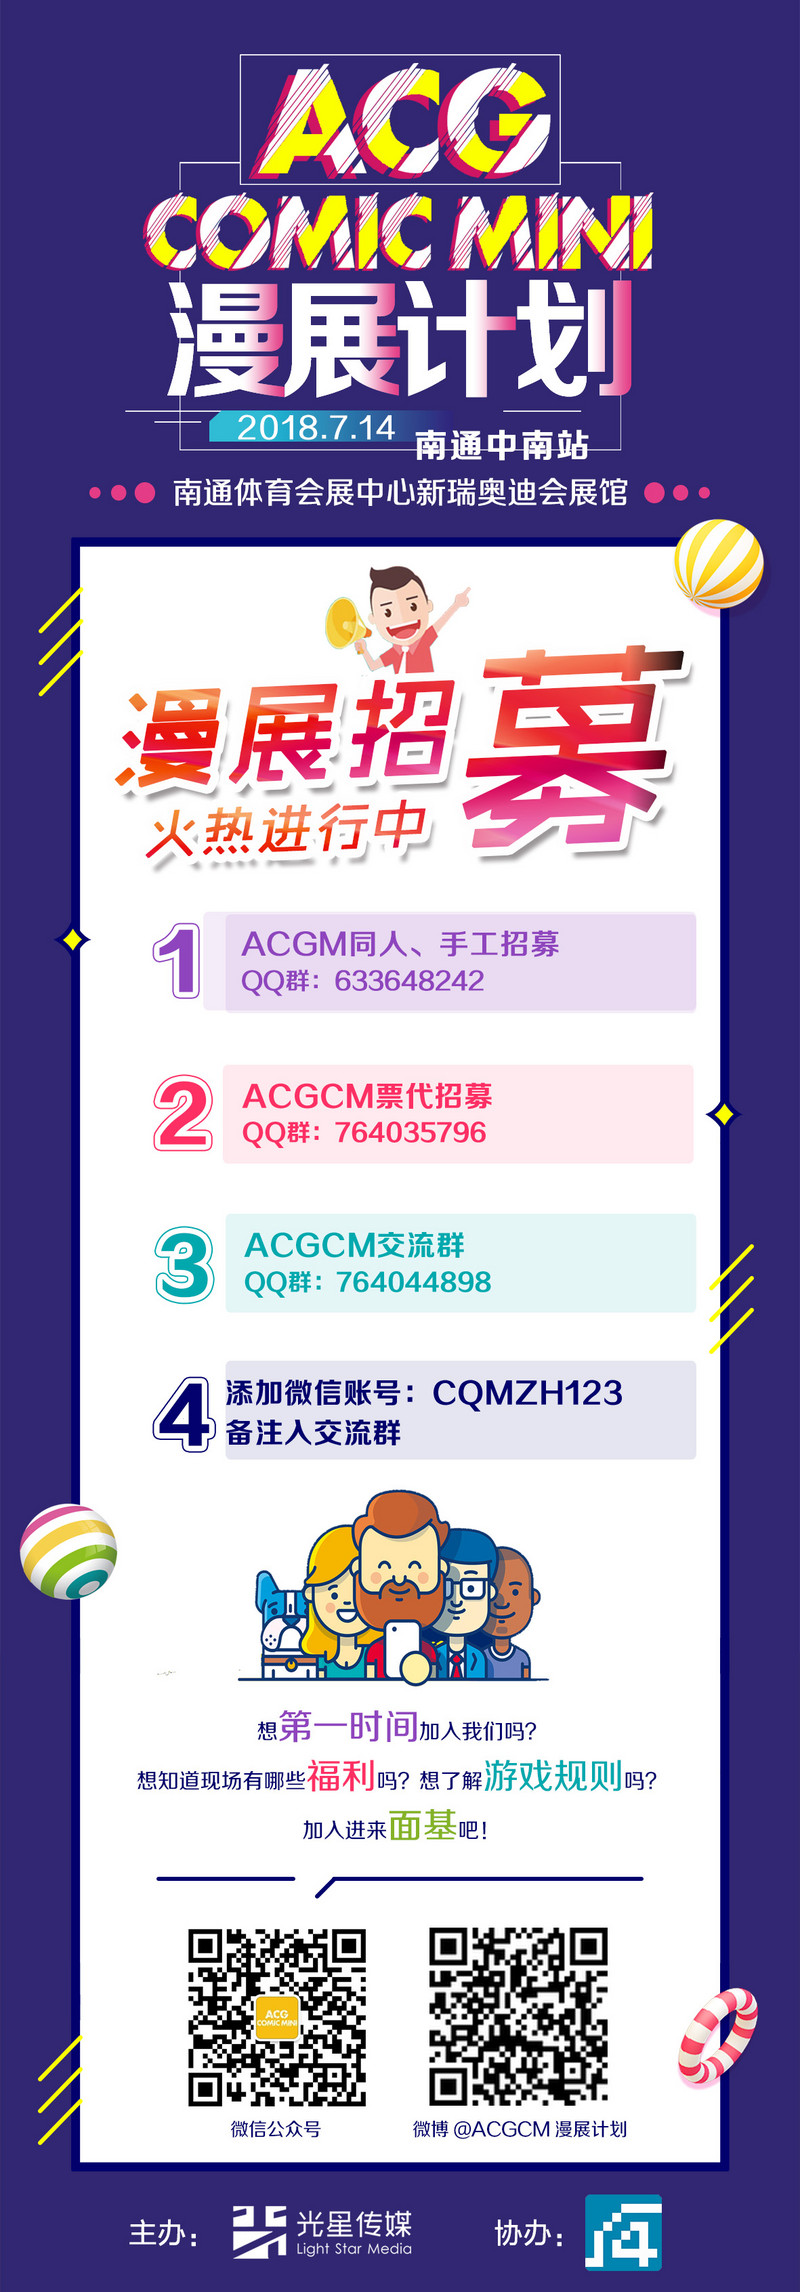 ACG comic mini 动漫竞技嘉年华-C3动漫网